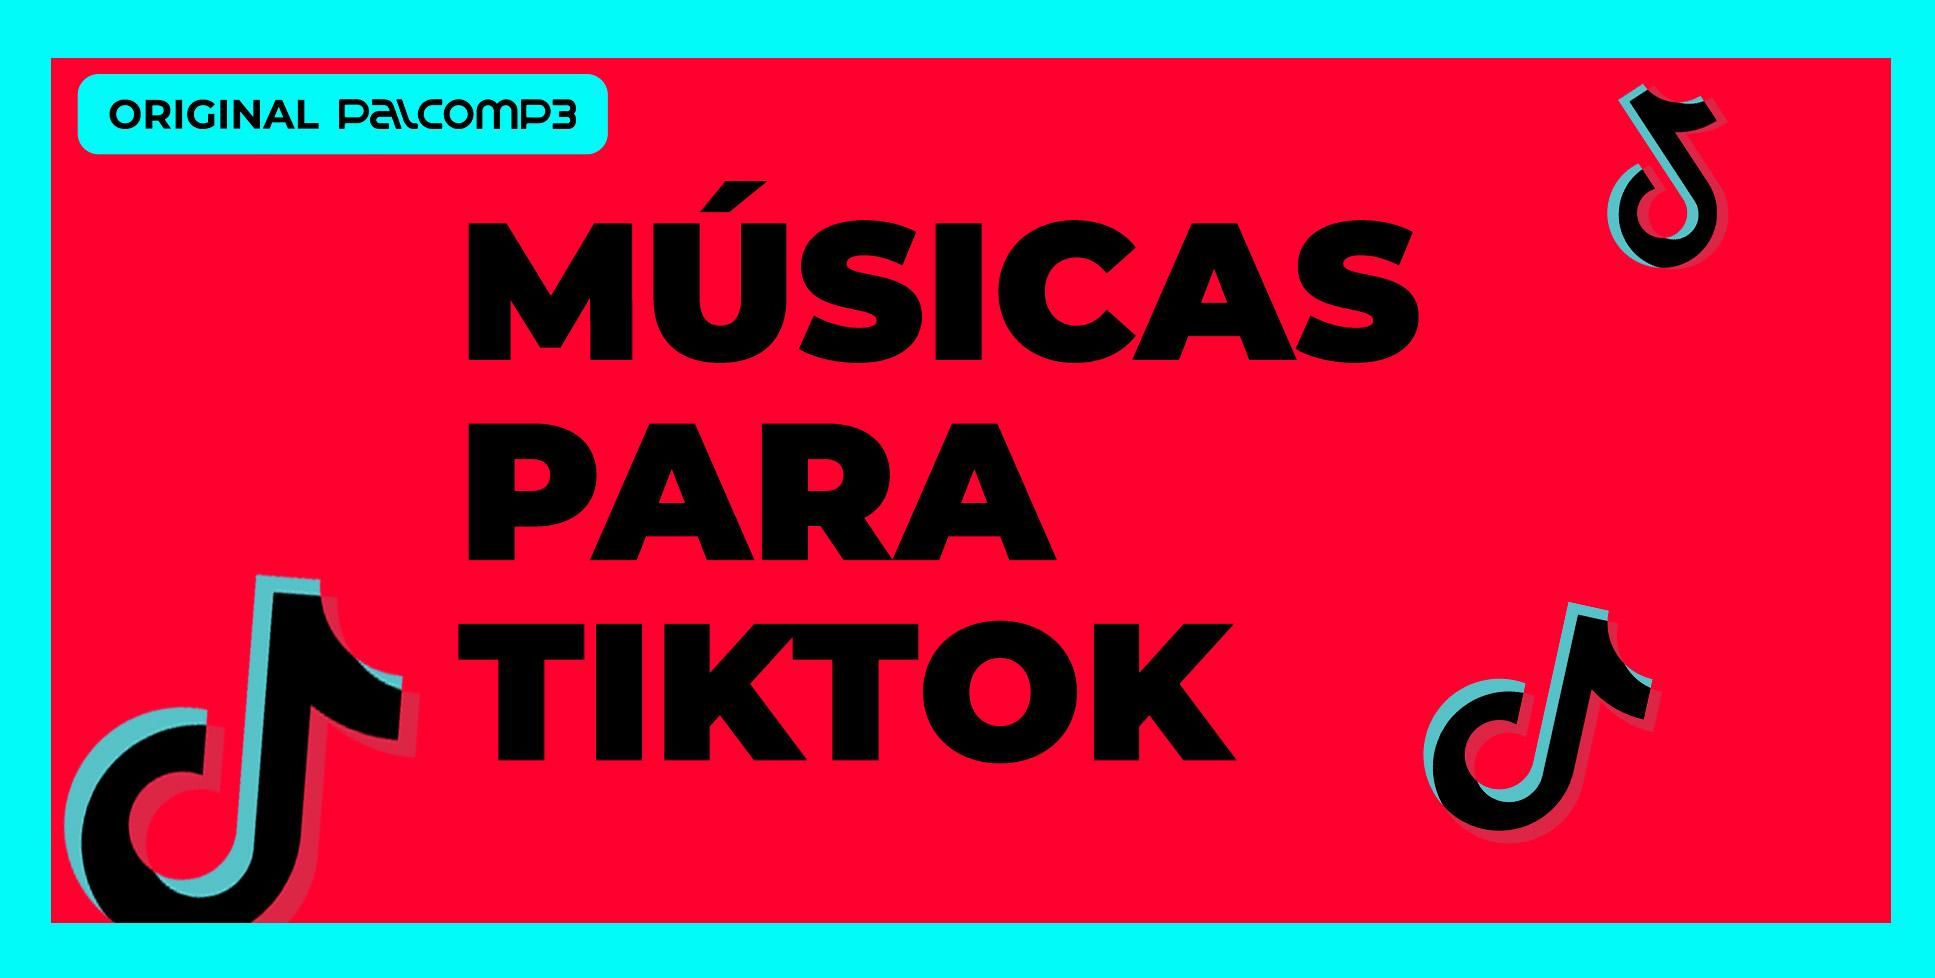 DANCE SE SOUBER TikTok: Confira as músicas e dancinhas mais bombadas do Tik  Tok no momento